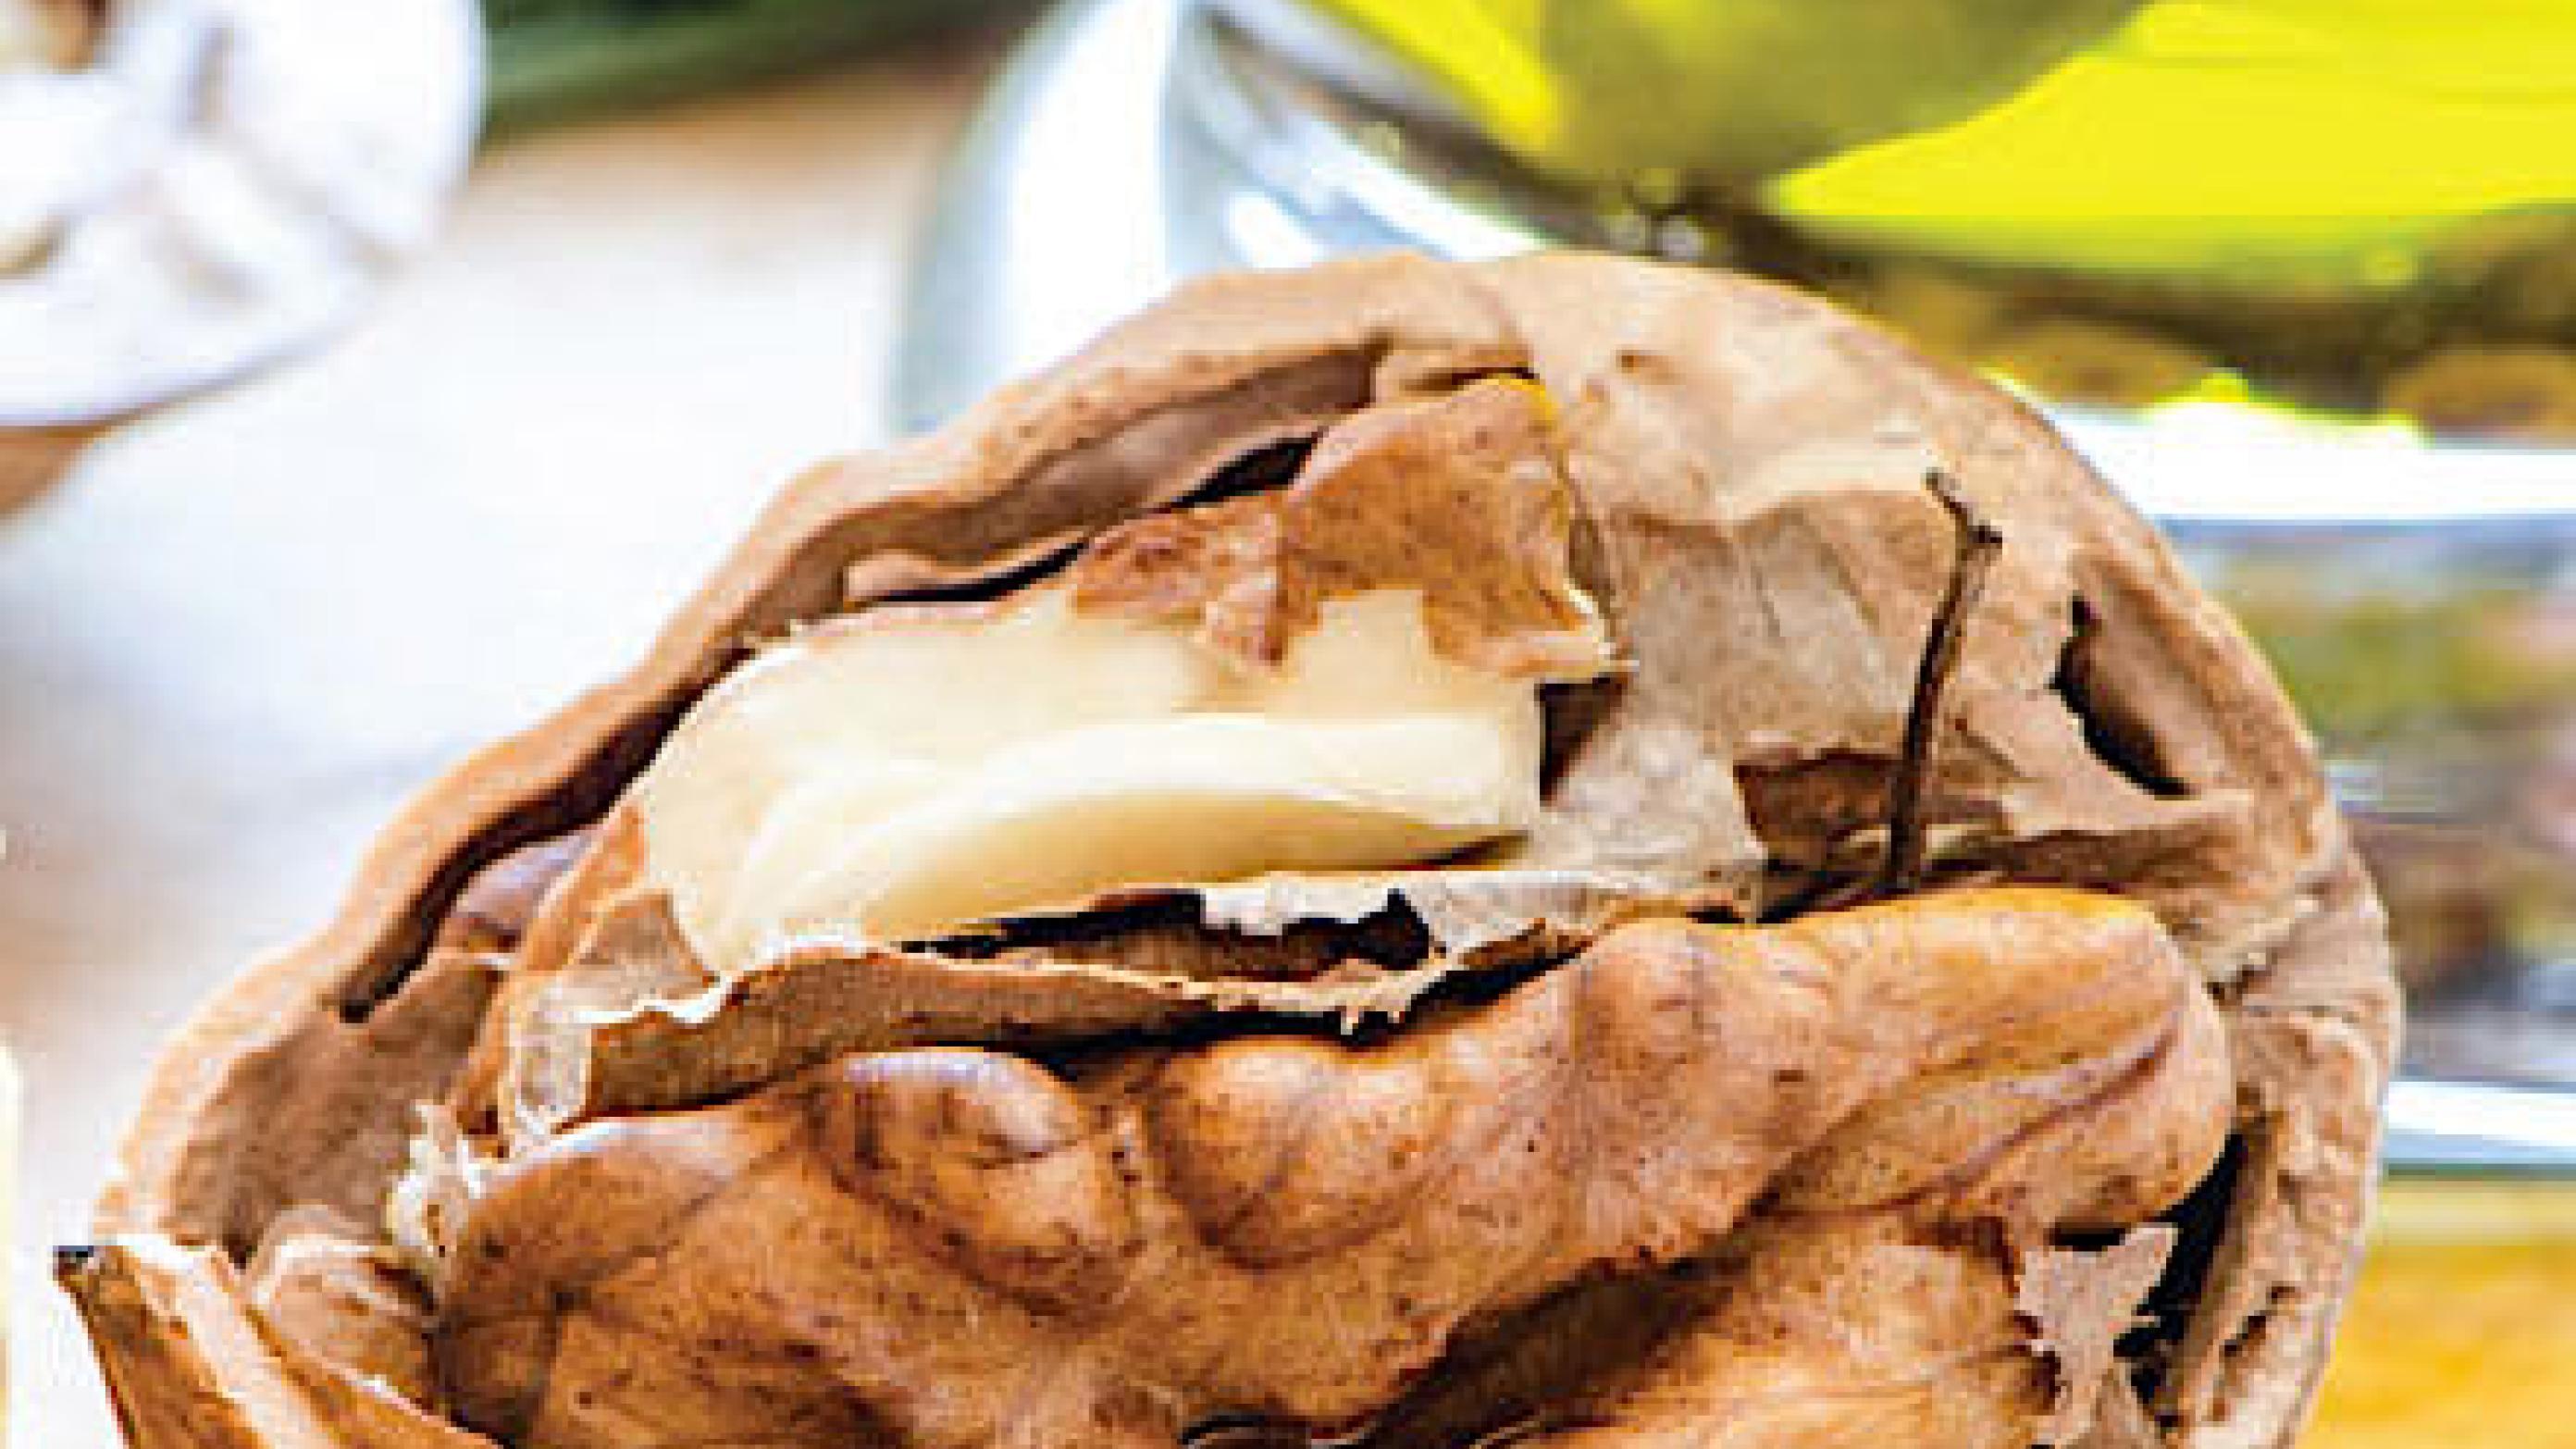 Olivenolie og nødder indgår som vigtige bestanddele i den traditionelle middelhavskost. Foto: Colourbox